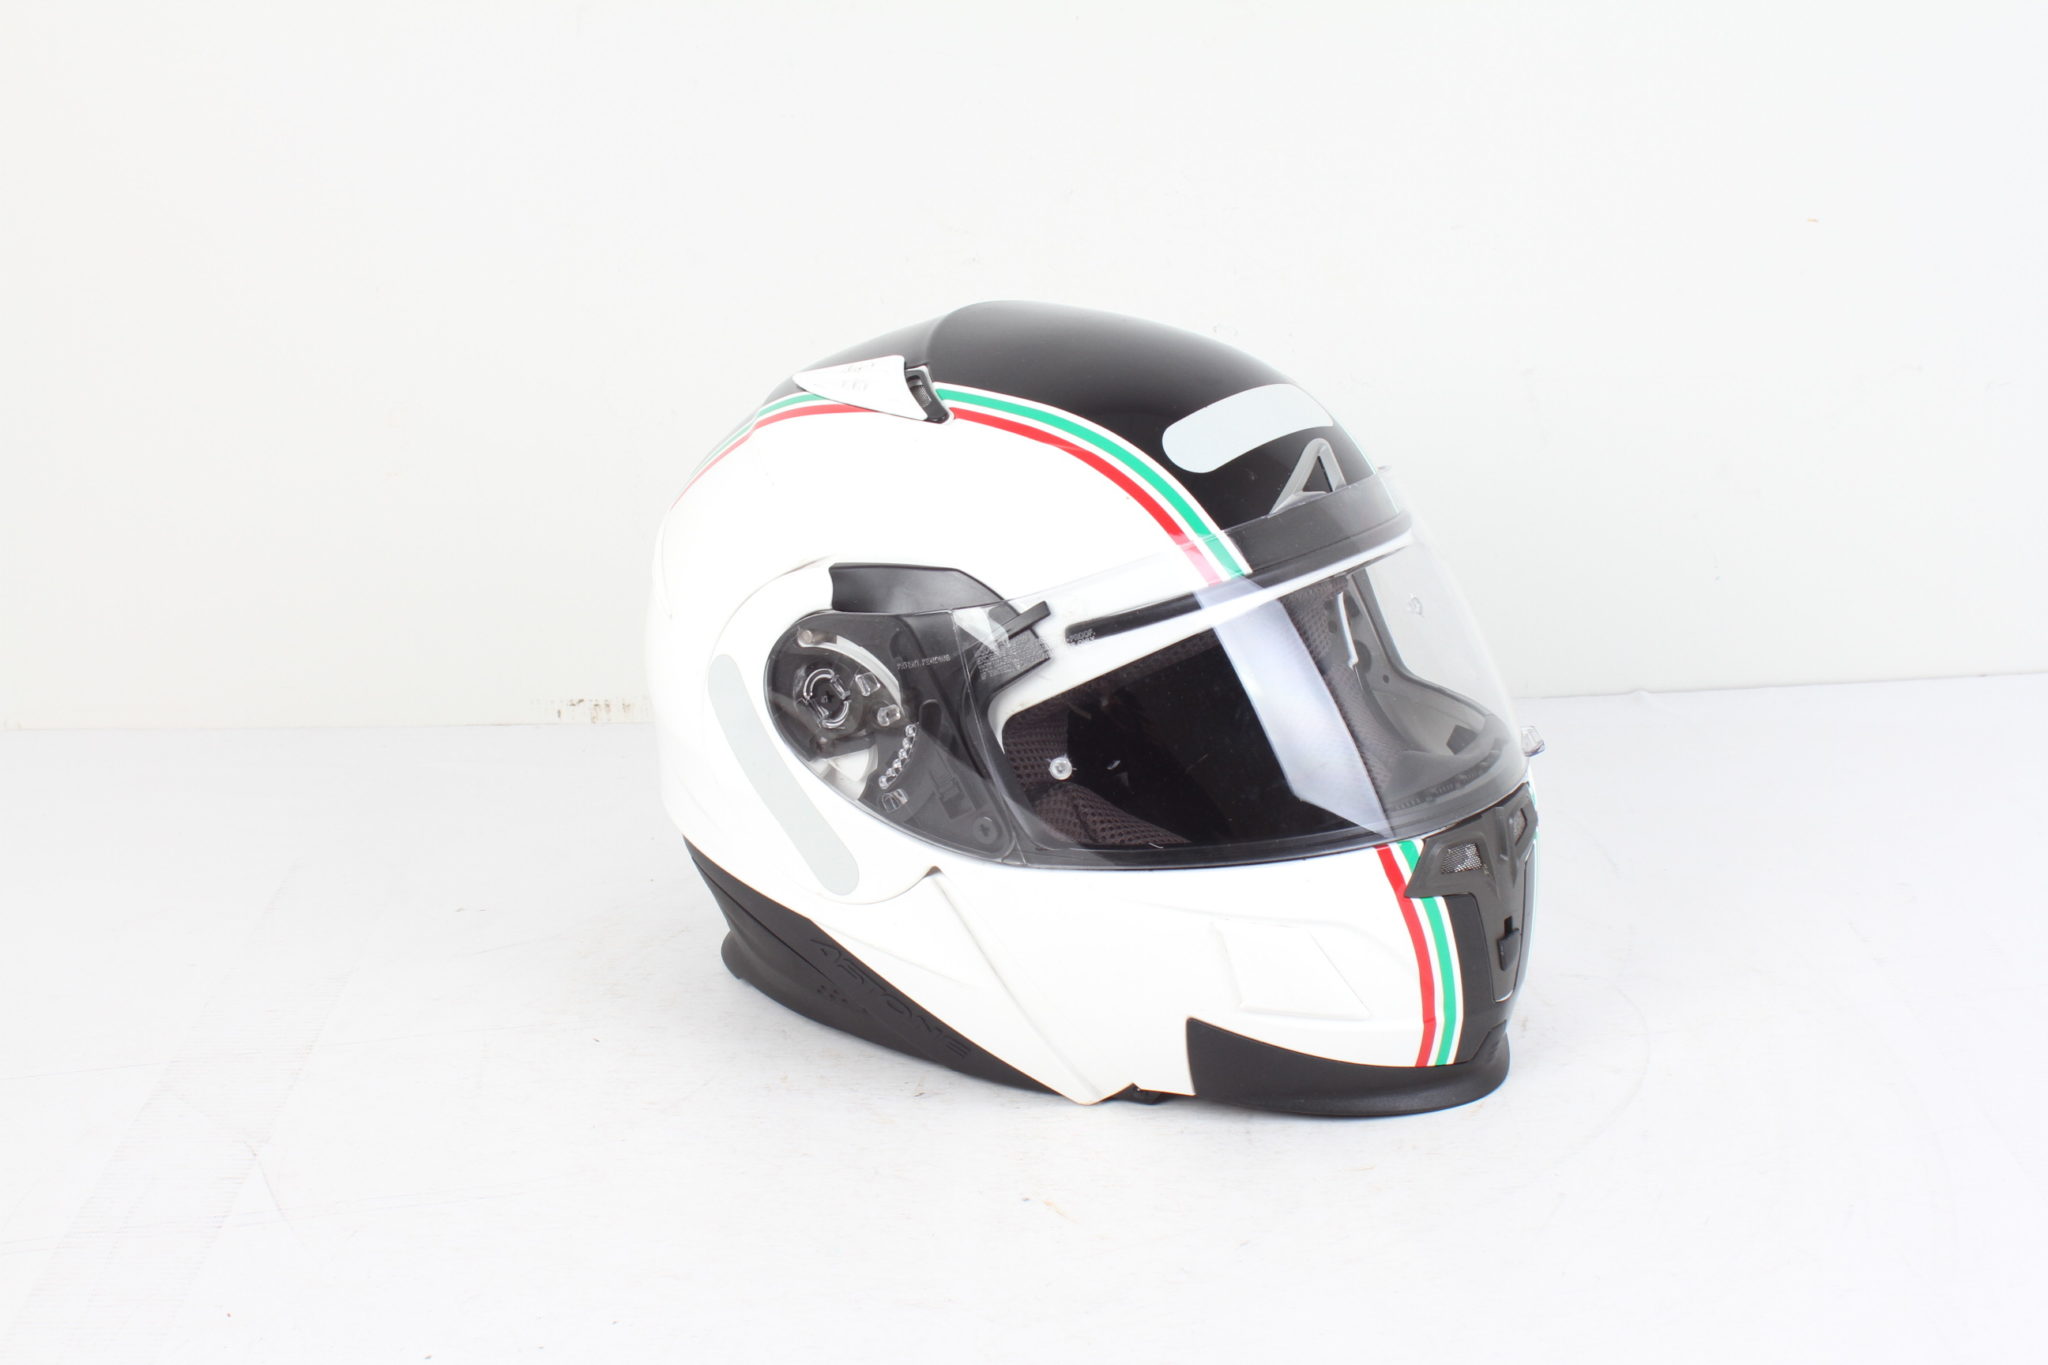 Casque moto Helmets - Taille XS Emmaüs Etikette